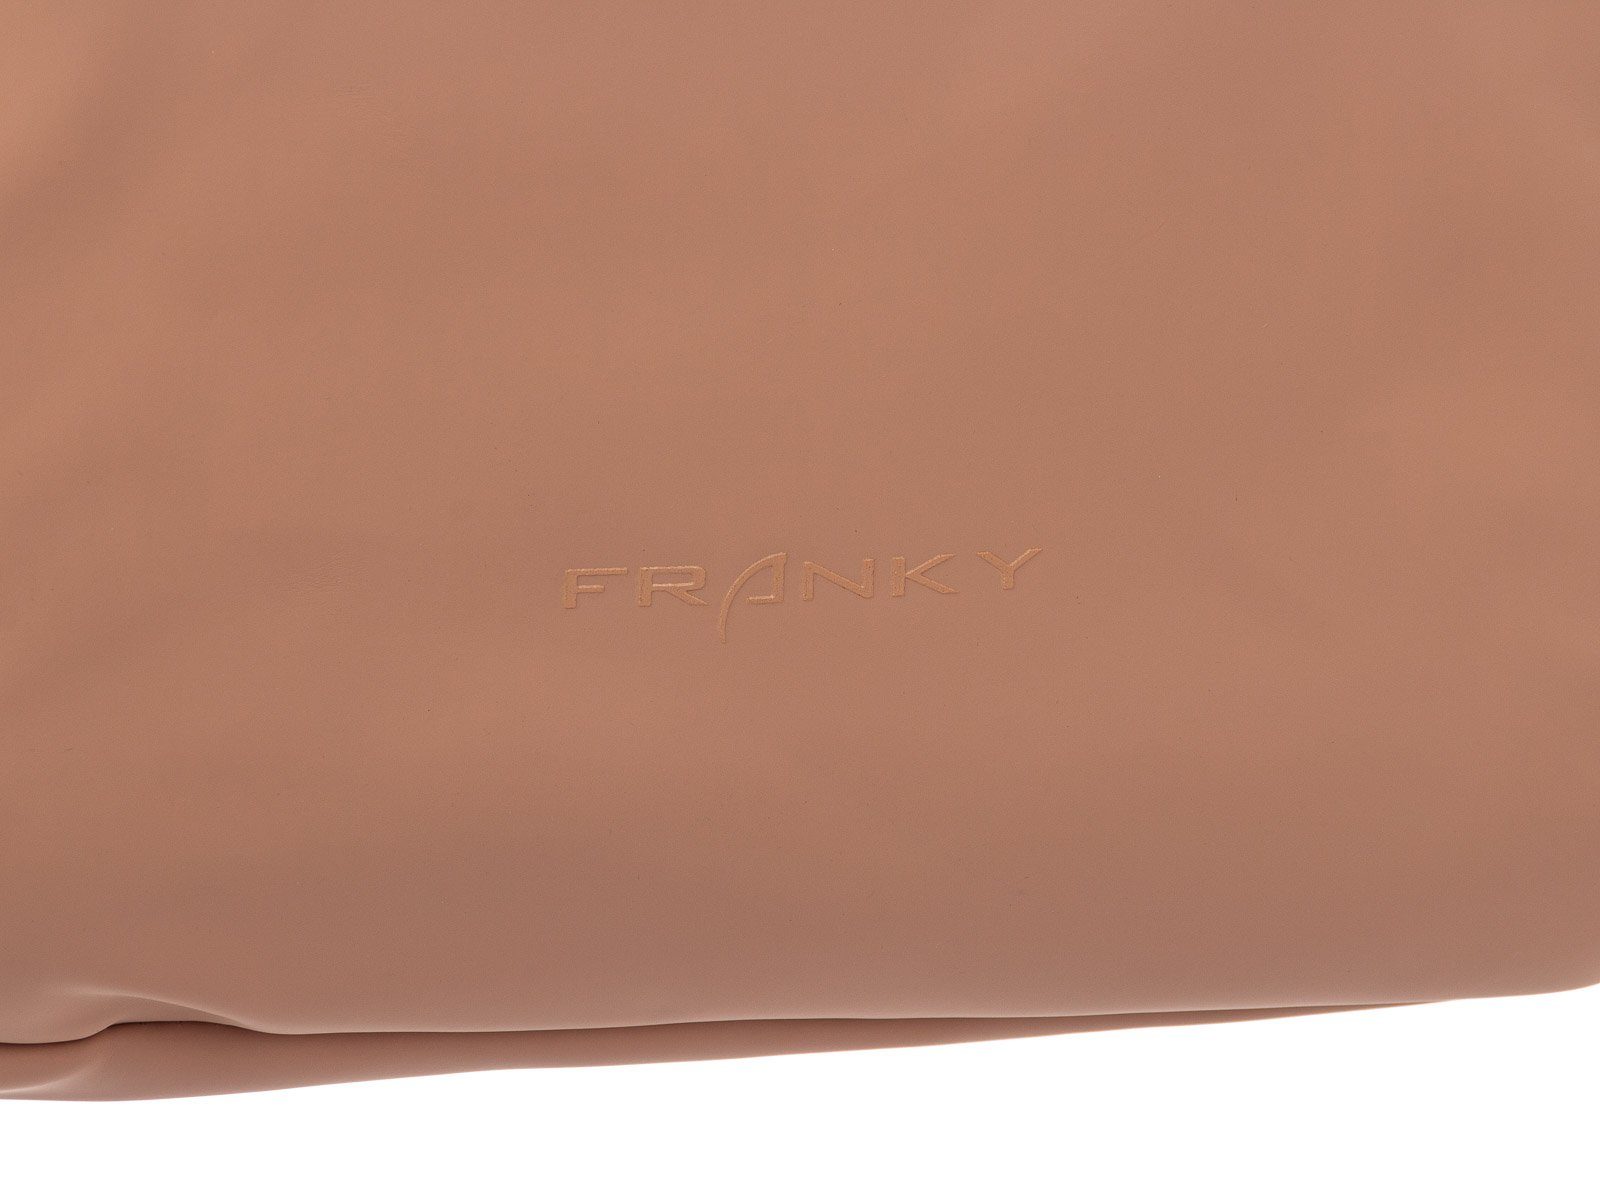 Notebookfach 15" Freizeitrucksack Laptopfach Franky RS83-R 14 ", Franky lila Freizeitrucksack und Rollfalte